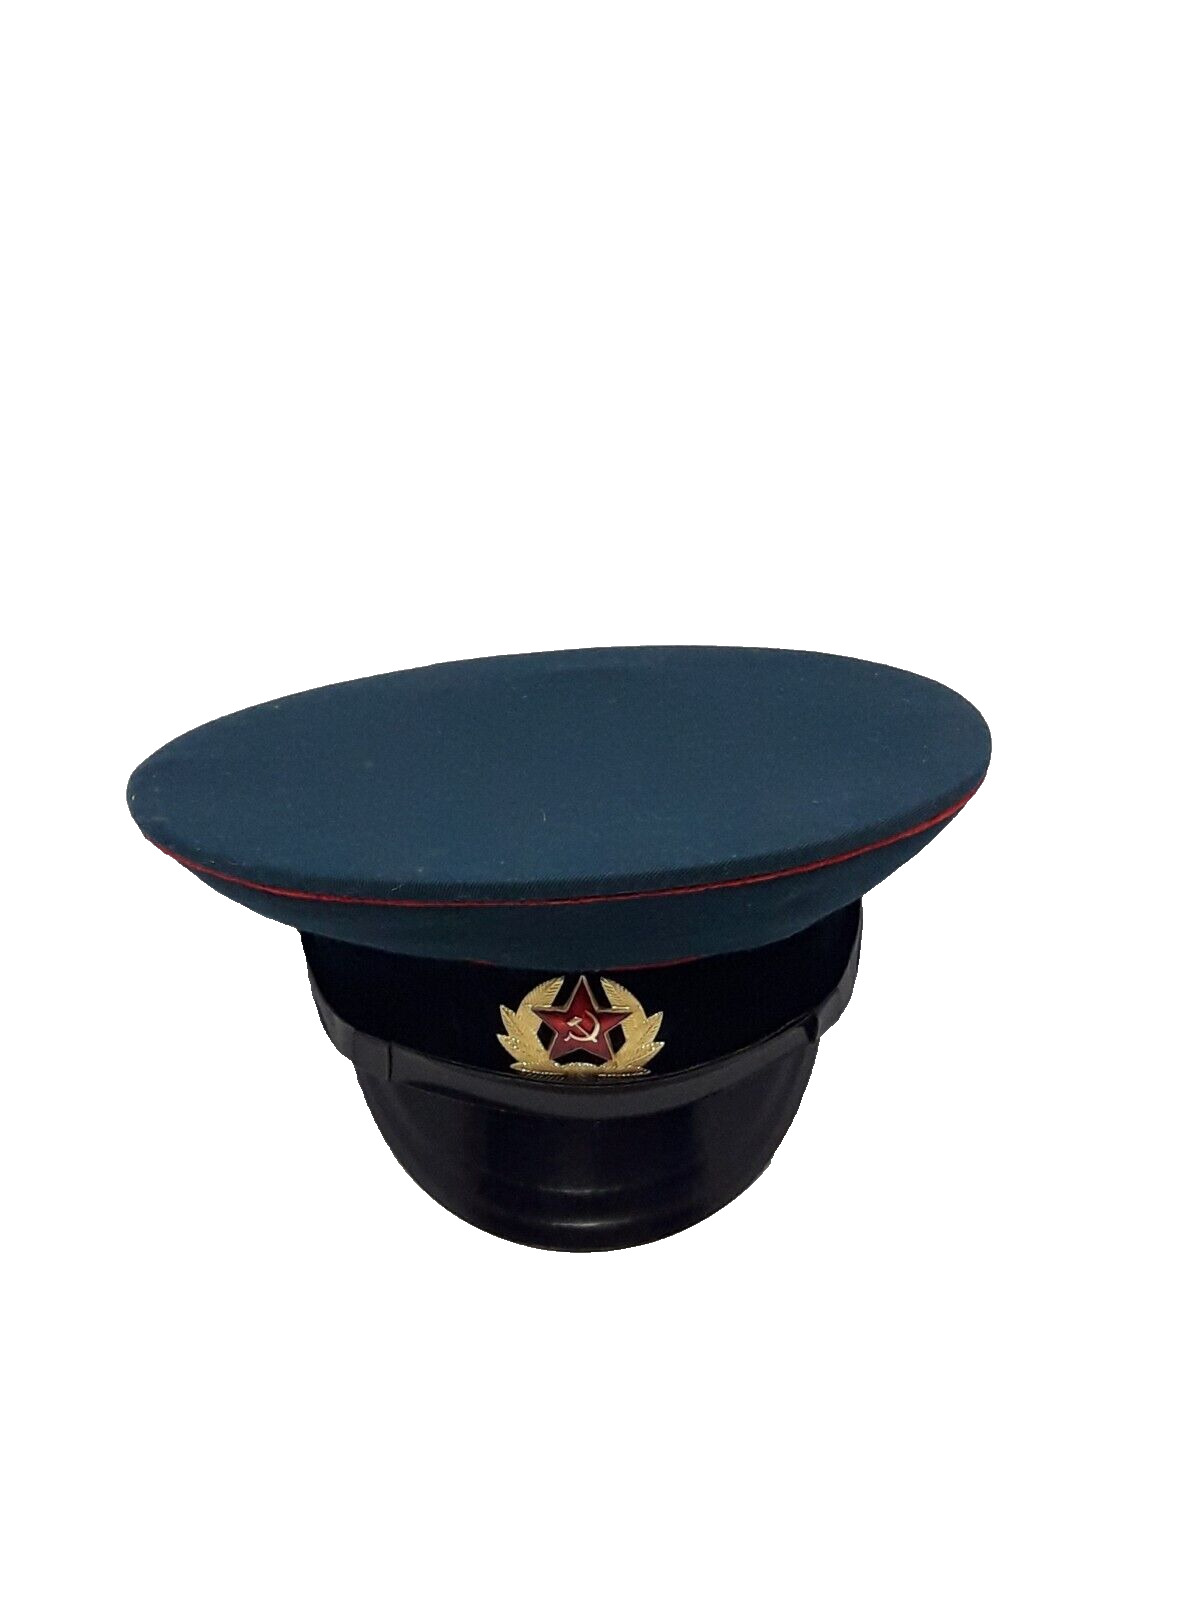 Vintage Soviet Moscow Visor Cap USSR Military Officer Hat Size 55 Original Old